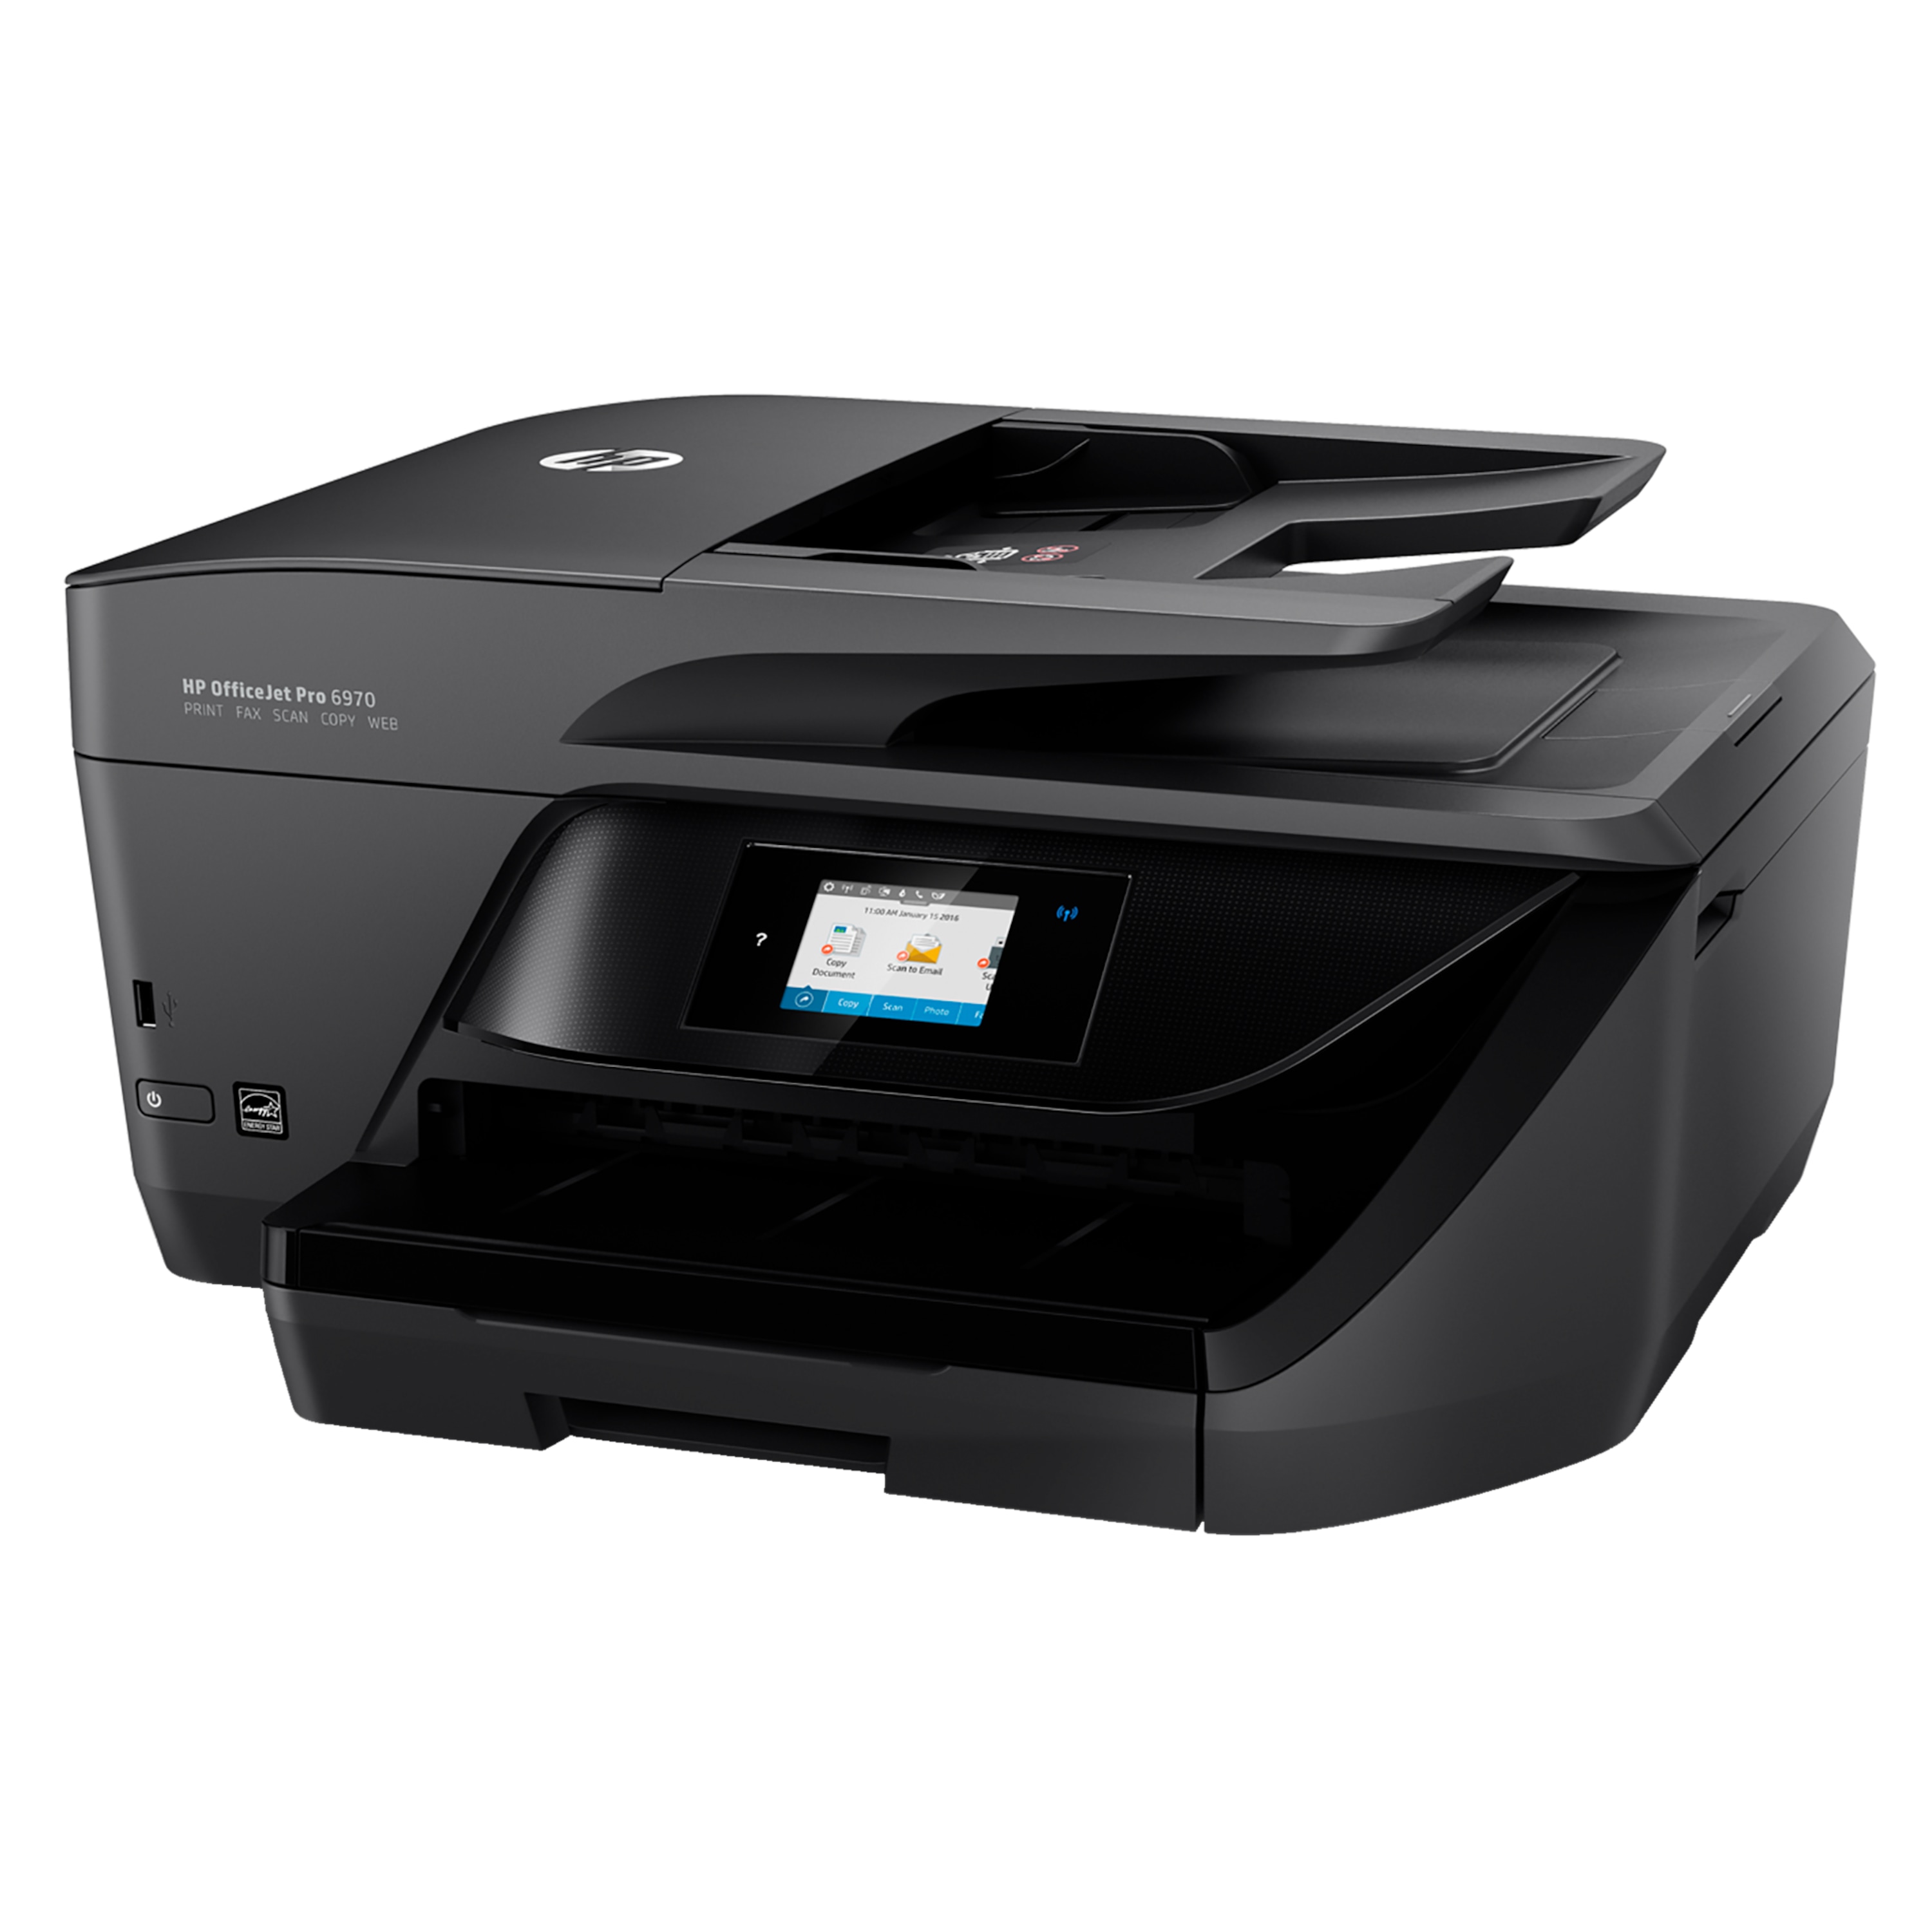 HP OfficeJet Pro 6970 All-in-One-Drucker - Drucken, Kopieren, Scannen und Faxen mit einem Gerät mit Ihrem PC, Smartphone und Tablet-PC